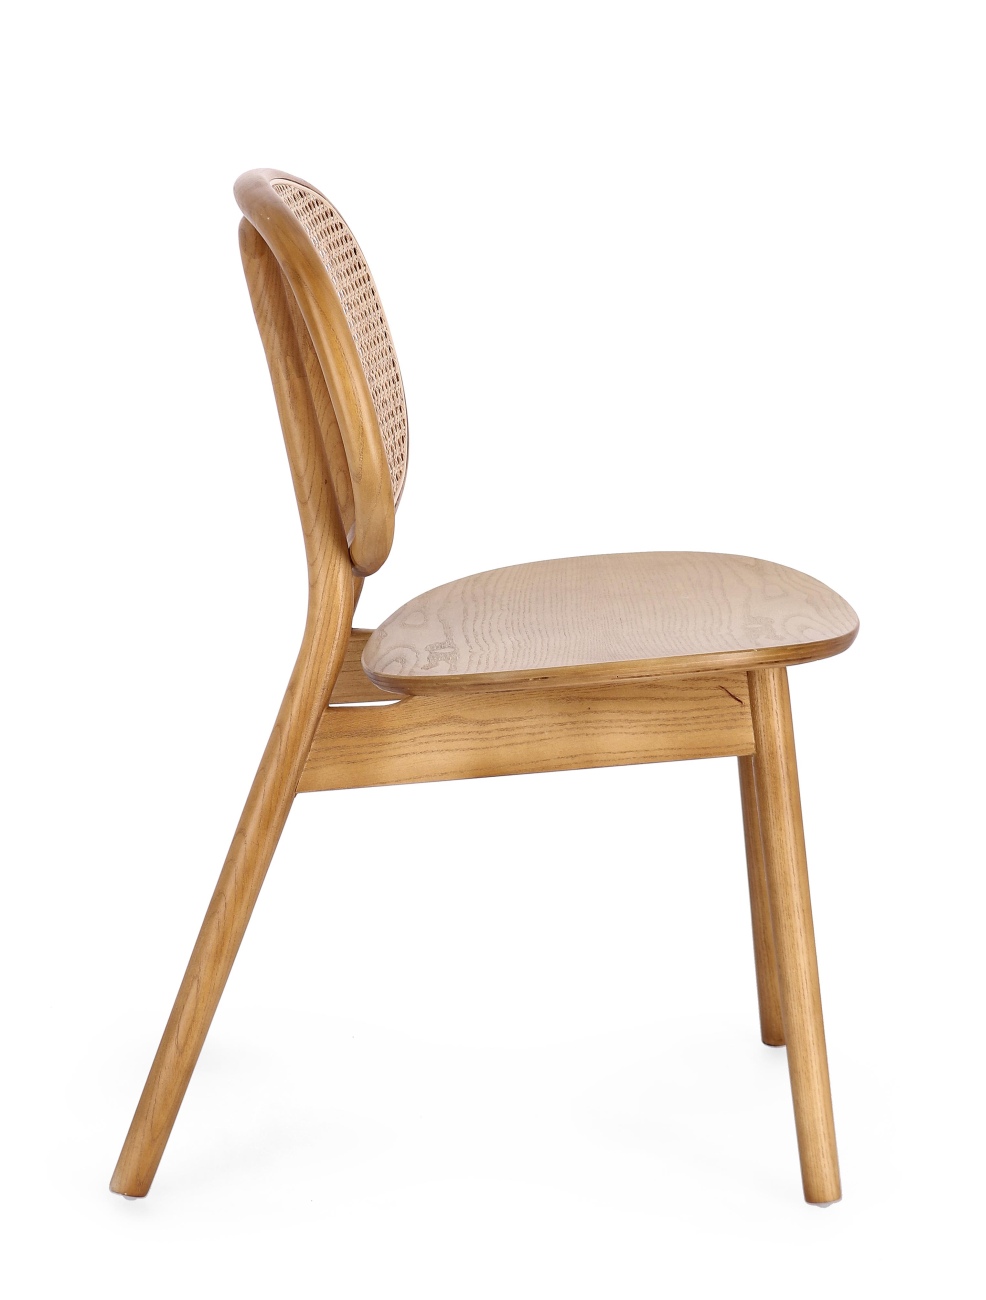 Der Esszimmerstuhl Adolis überzeugt mit seinem modernen Stil. Gefertigt wurde er aus Ulmmenholz, welcher einen natürlichen Farbton besitzt. Die Rückenlehne ist aus Rattan und hat eine natürliche Farbe. Der Stuhl besitzt eine Sitzhöhe von 46 cm.